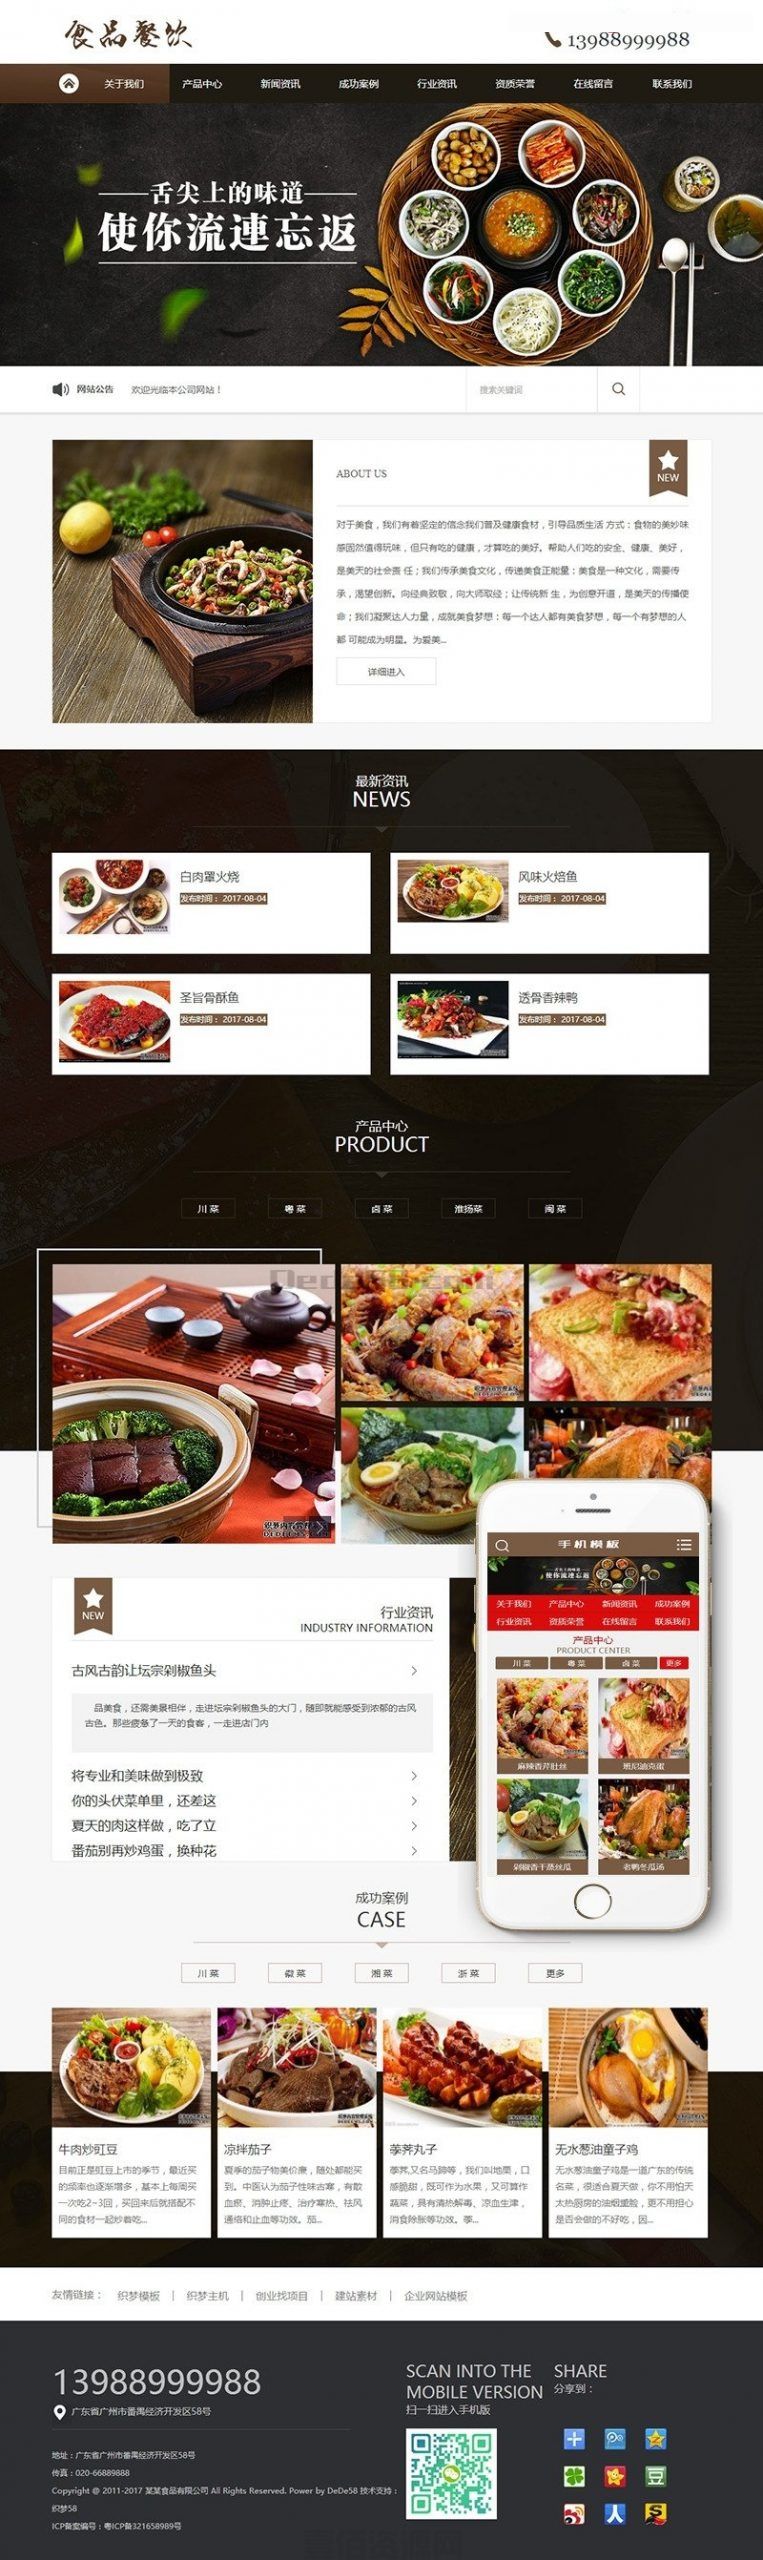 健康食品餐饮美食类网站源码 dedecms织梦模板 (带手机端)(图1)